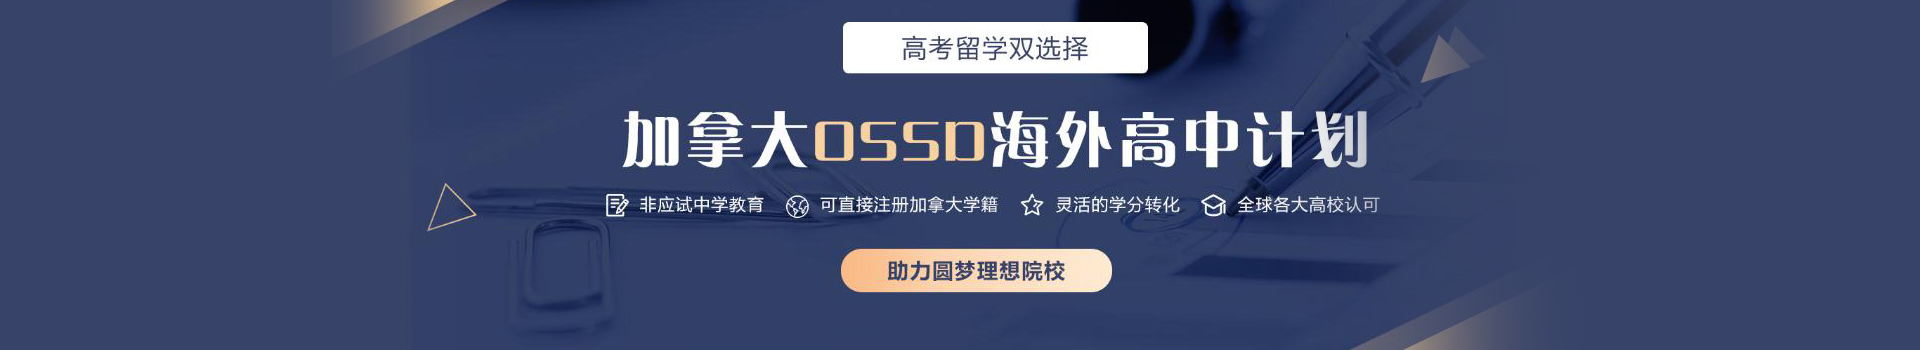 哈尔滨新航道OSSD课程